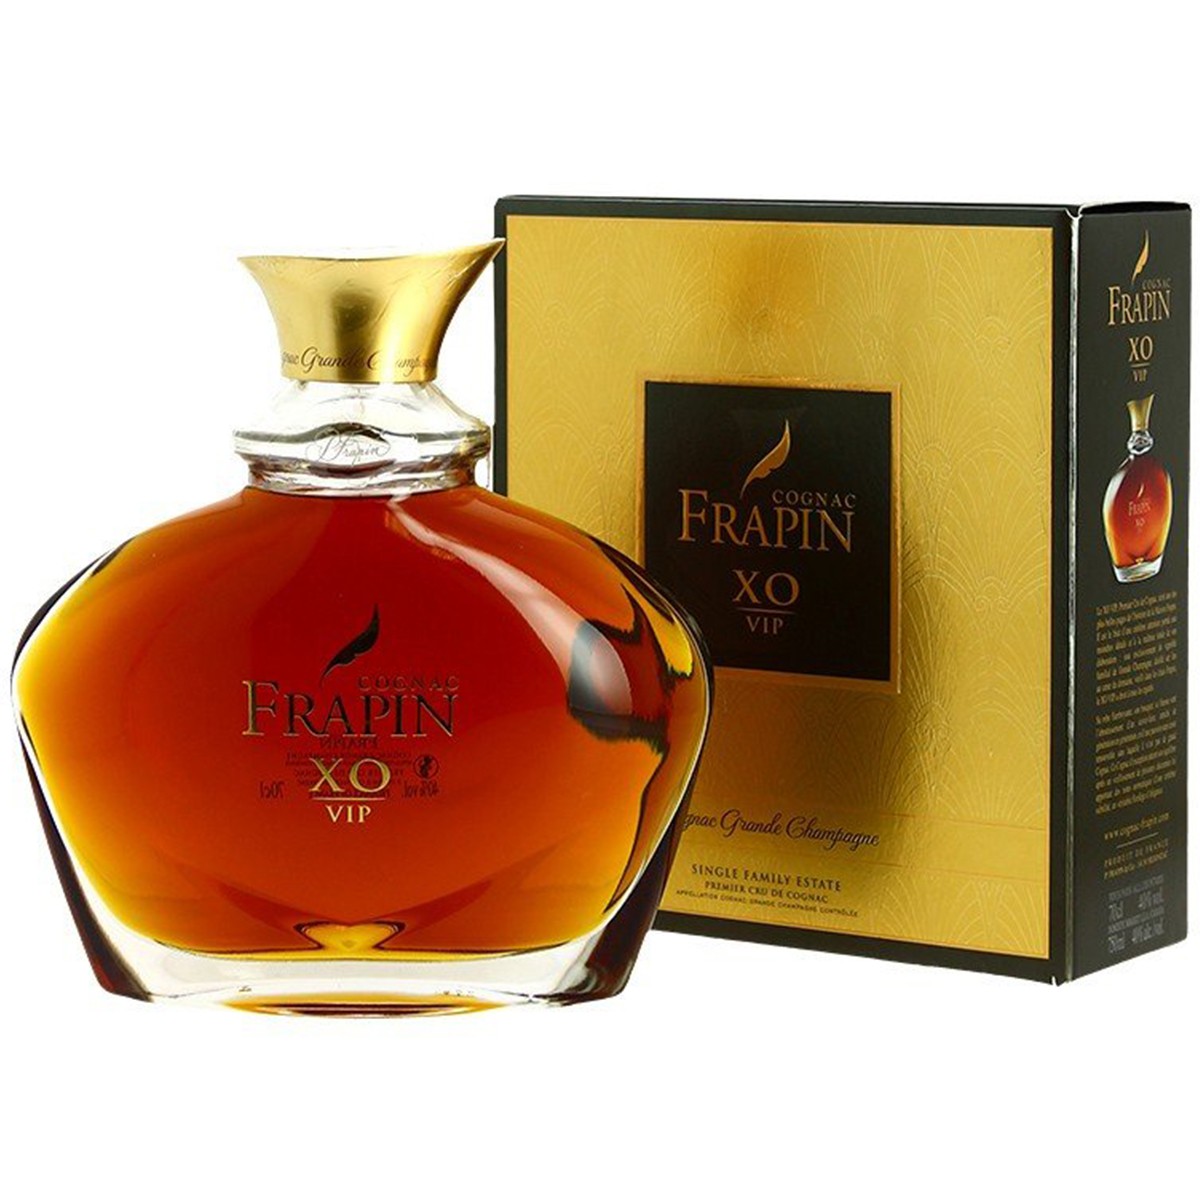 Frapin XO V.I.P. Cognac 40% 0,7L v kartóne